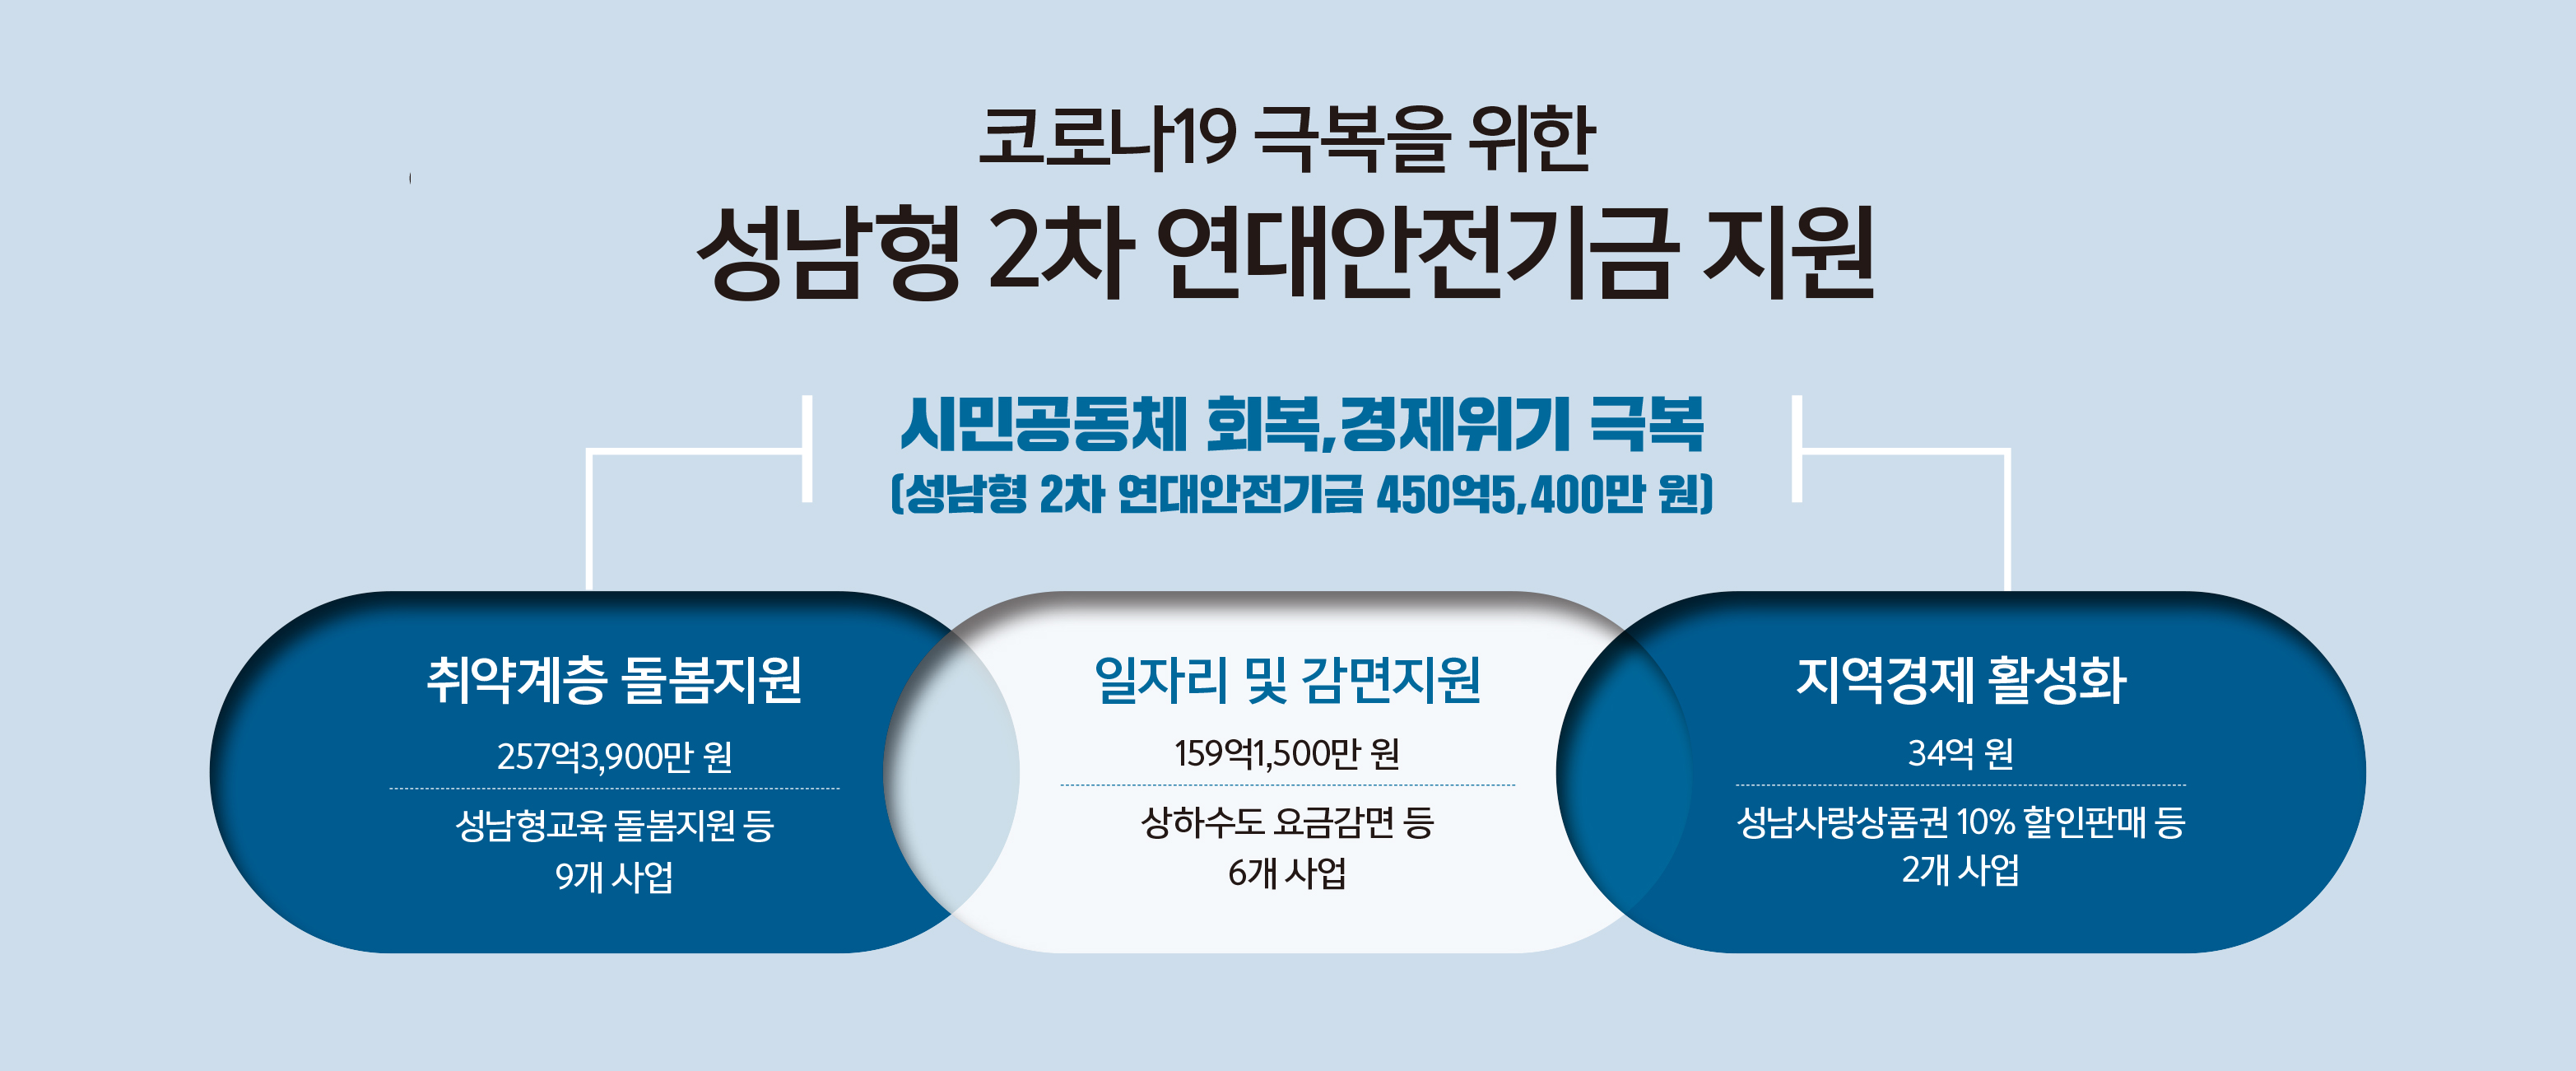 성남시 '성남형 2차 연대안전기금'